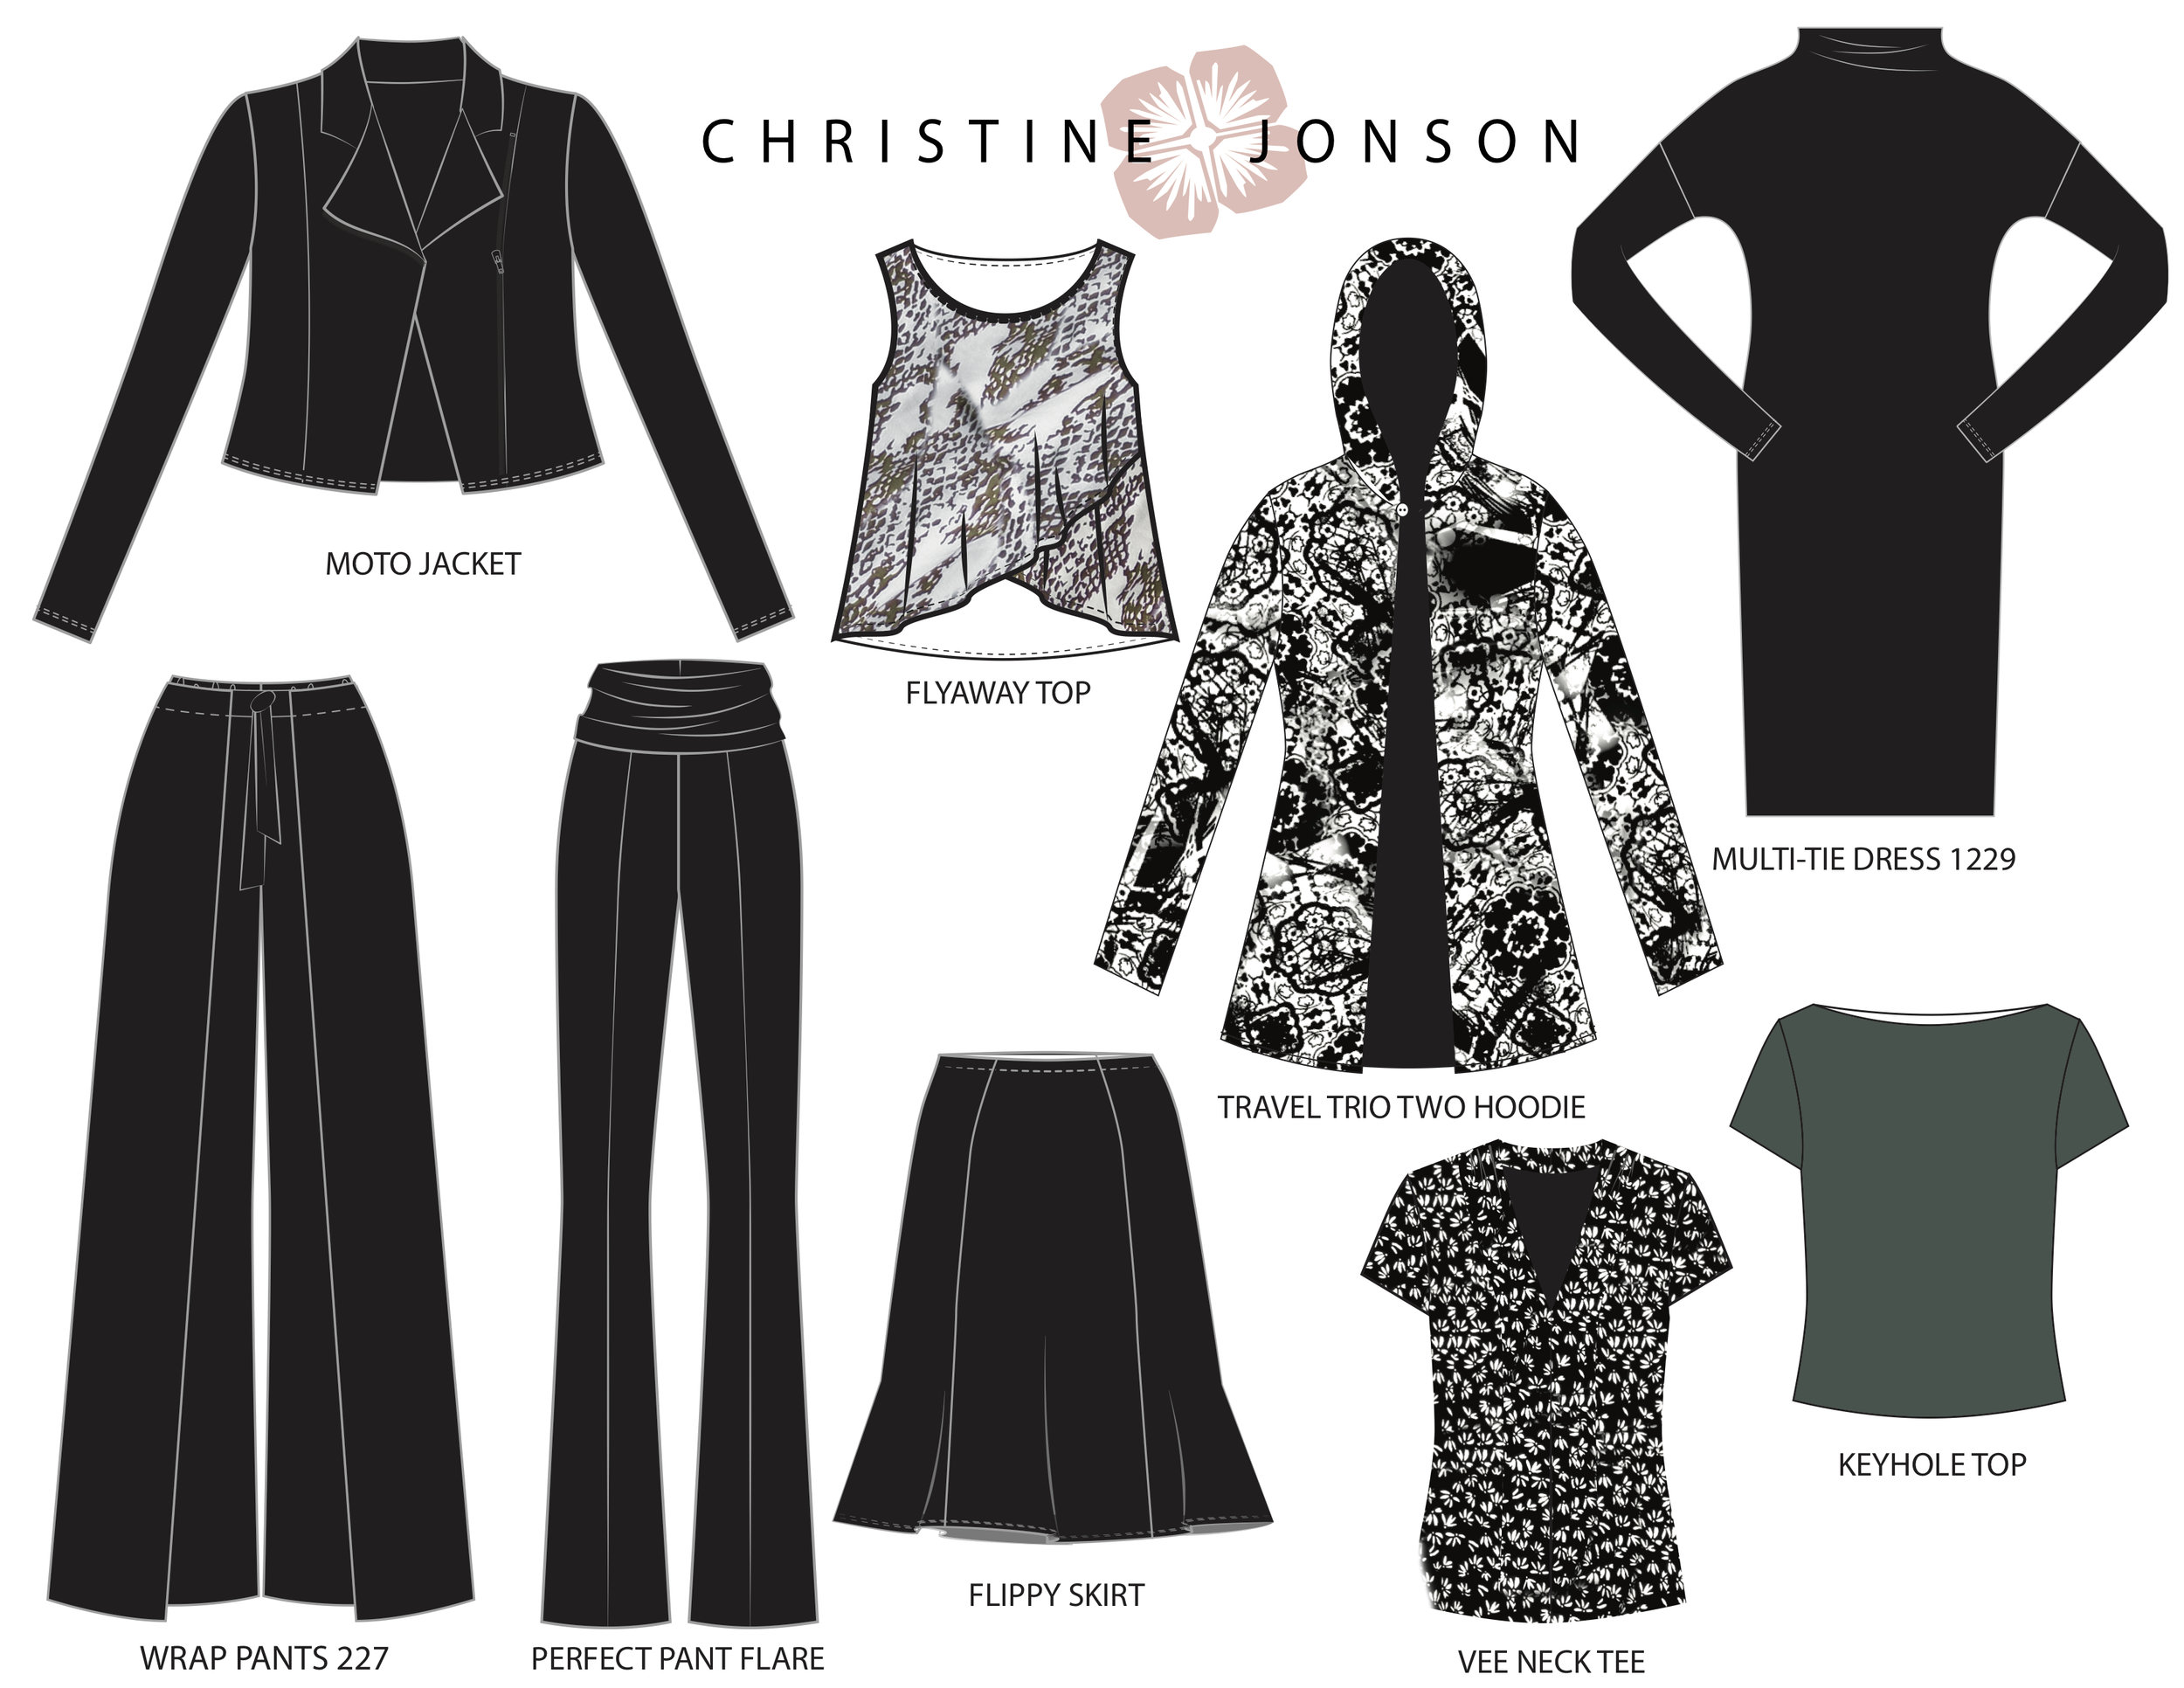 Jessilou's Closet Calvin Crop - PDF Pattern – The Sewing Club